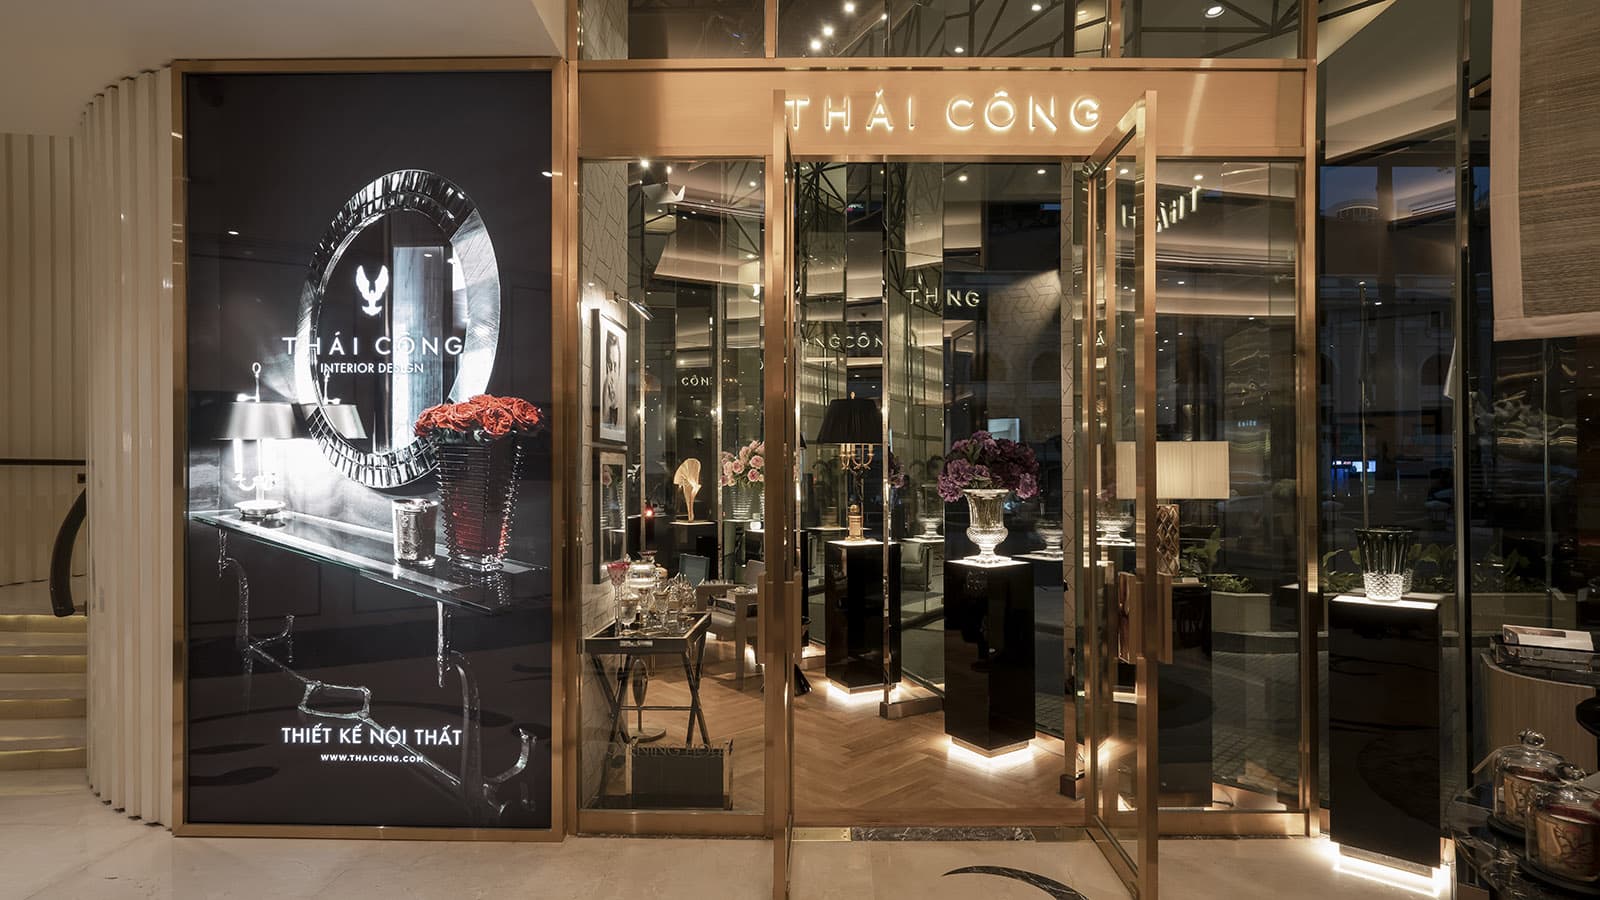 Ra mắt cửa hàng trang sức nội thất Thái Công tại Caravelle Hotel